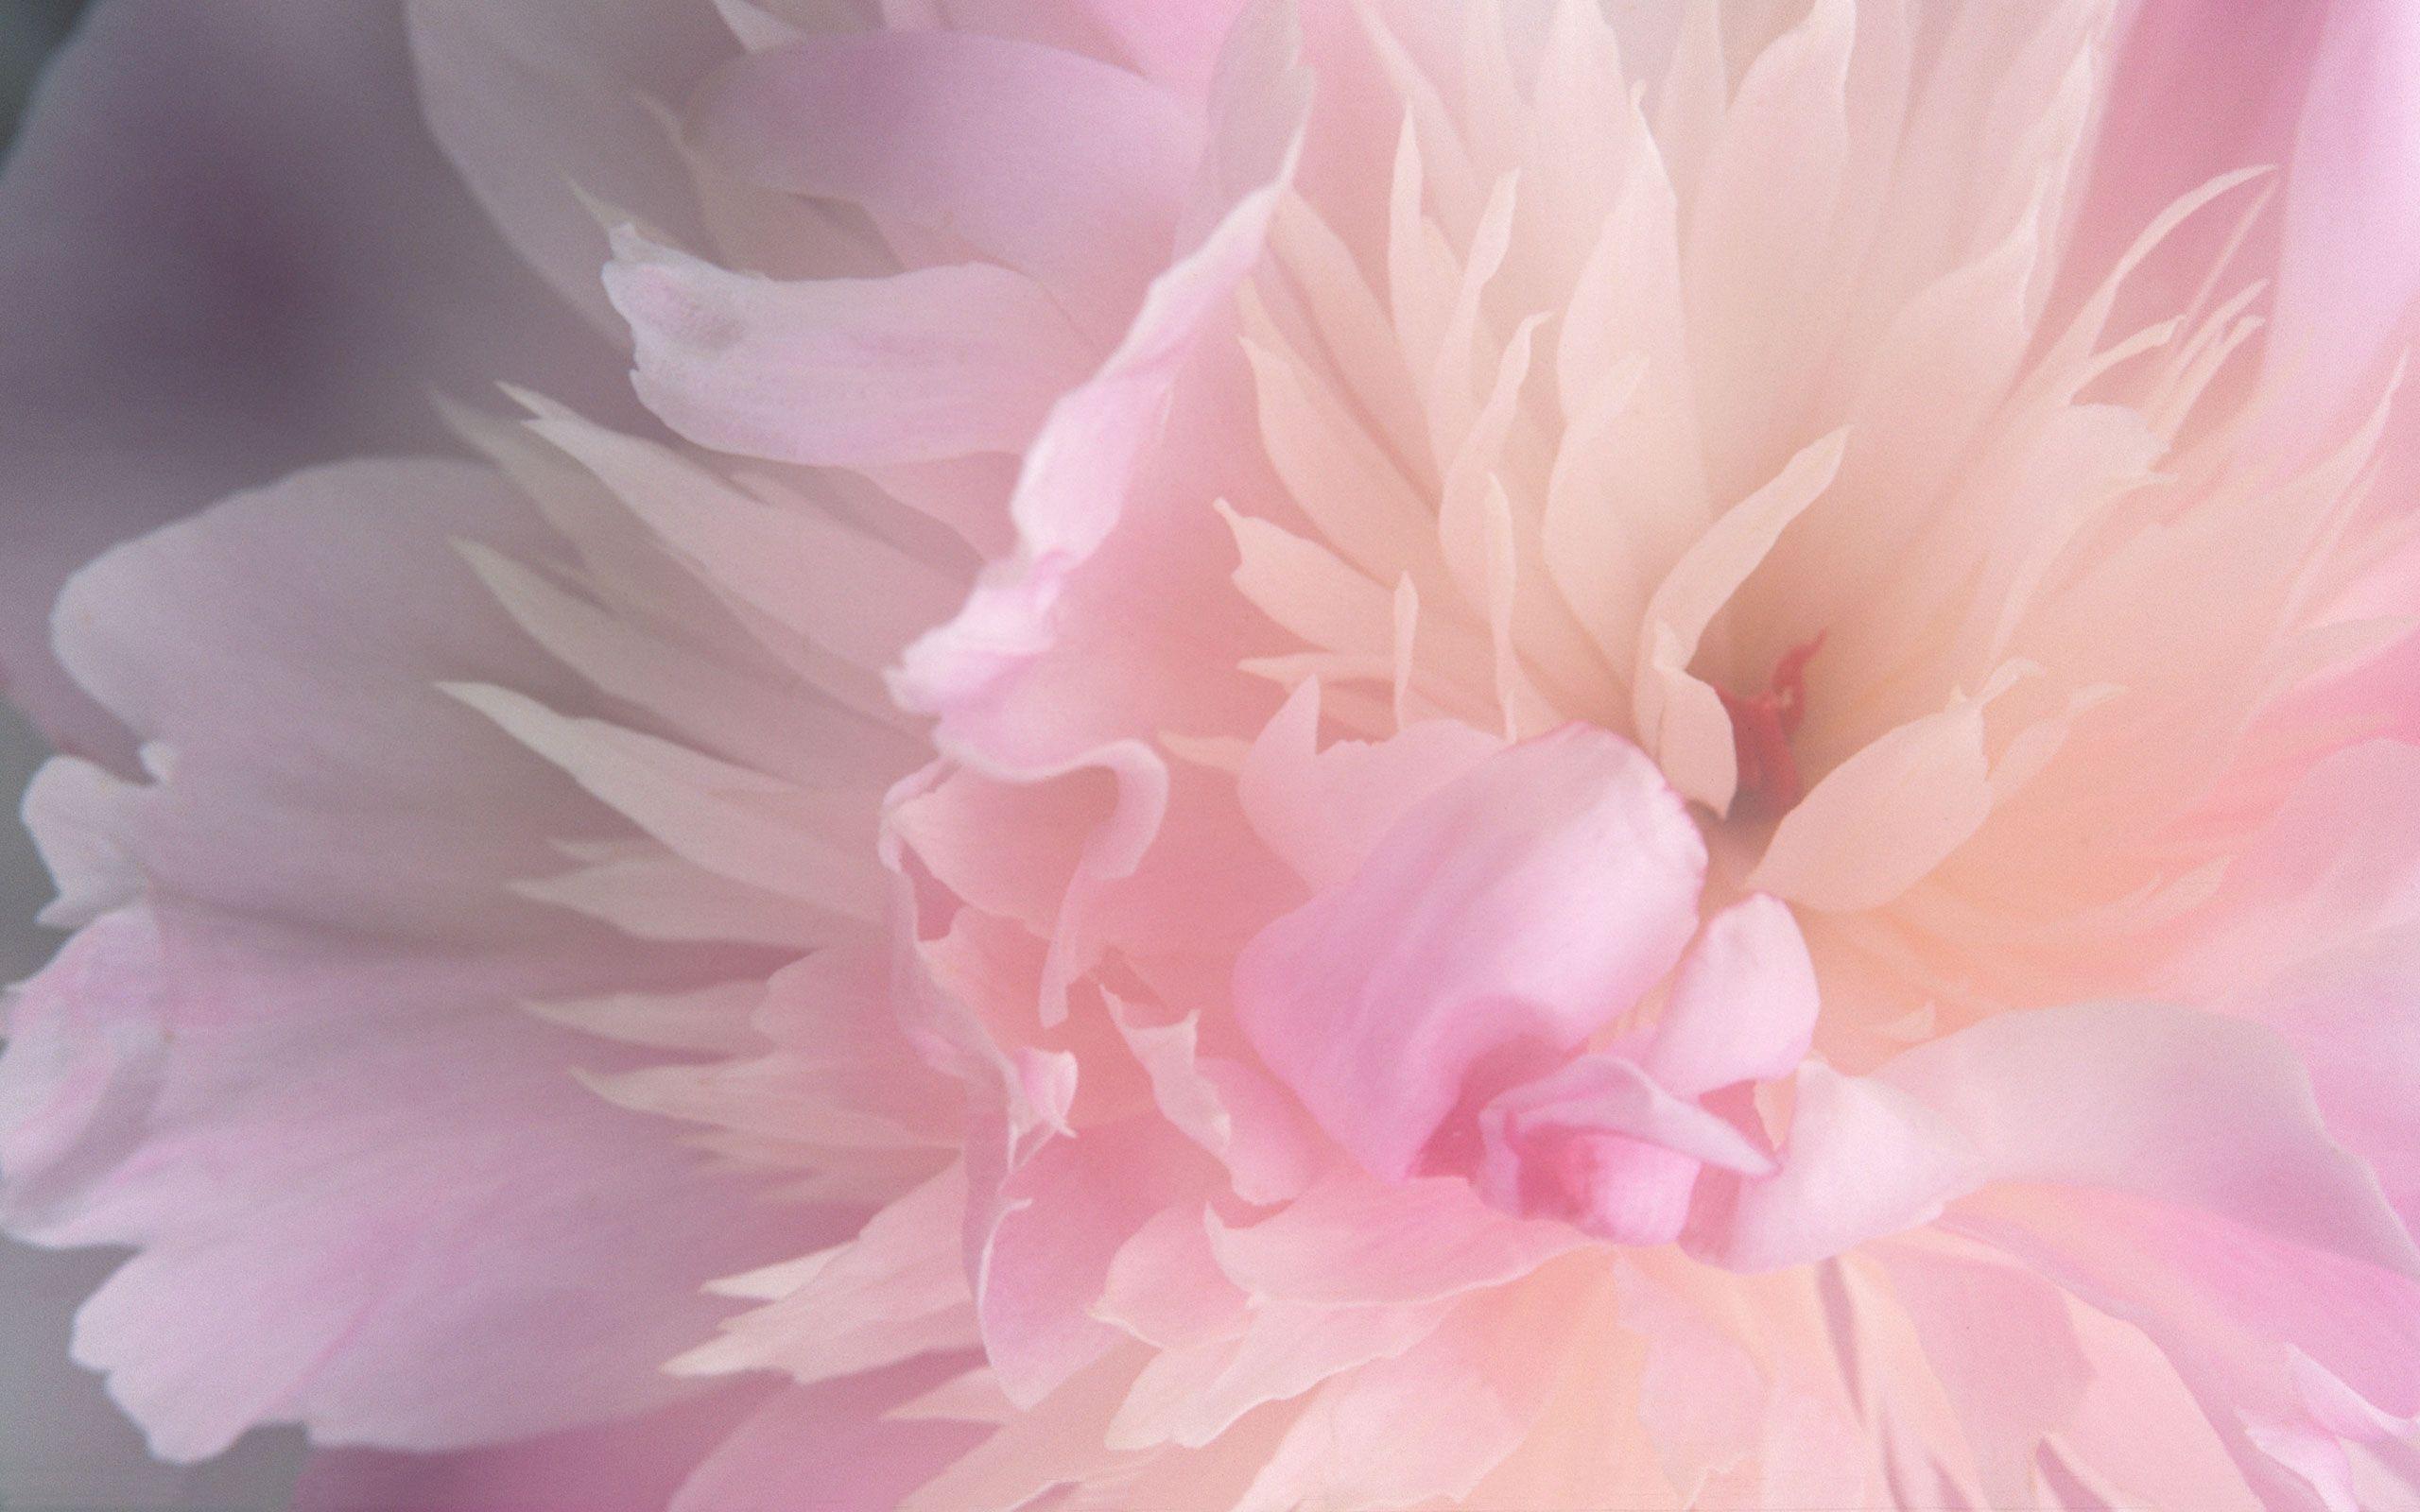 Nếu bạn là tín đồ của màu hồng thì hãy xem hình ảnh về hoa mẫu đơn màu hồng tuyệt đẹp! Đây là một trong những loài hoa đẹp nhất trong vương quốc hoa. Hãy để ánh sáng mượt mà của hoa mẫu đơn hồng làm cho tâm hồn bạn sửng sốt trong niềm vui và hạnh phúc.